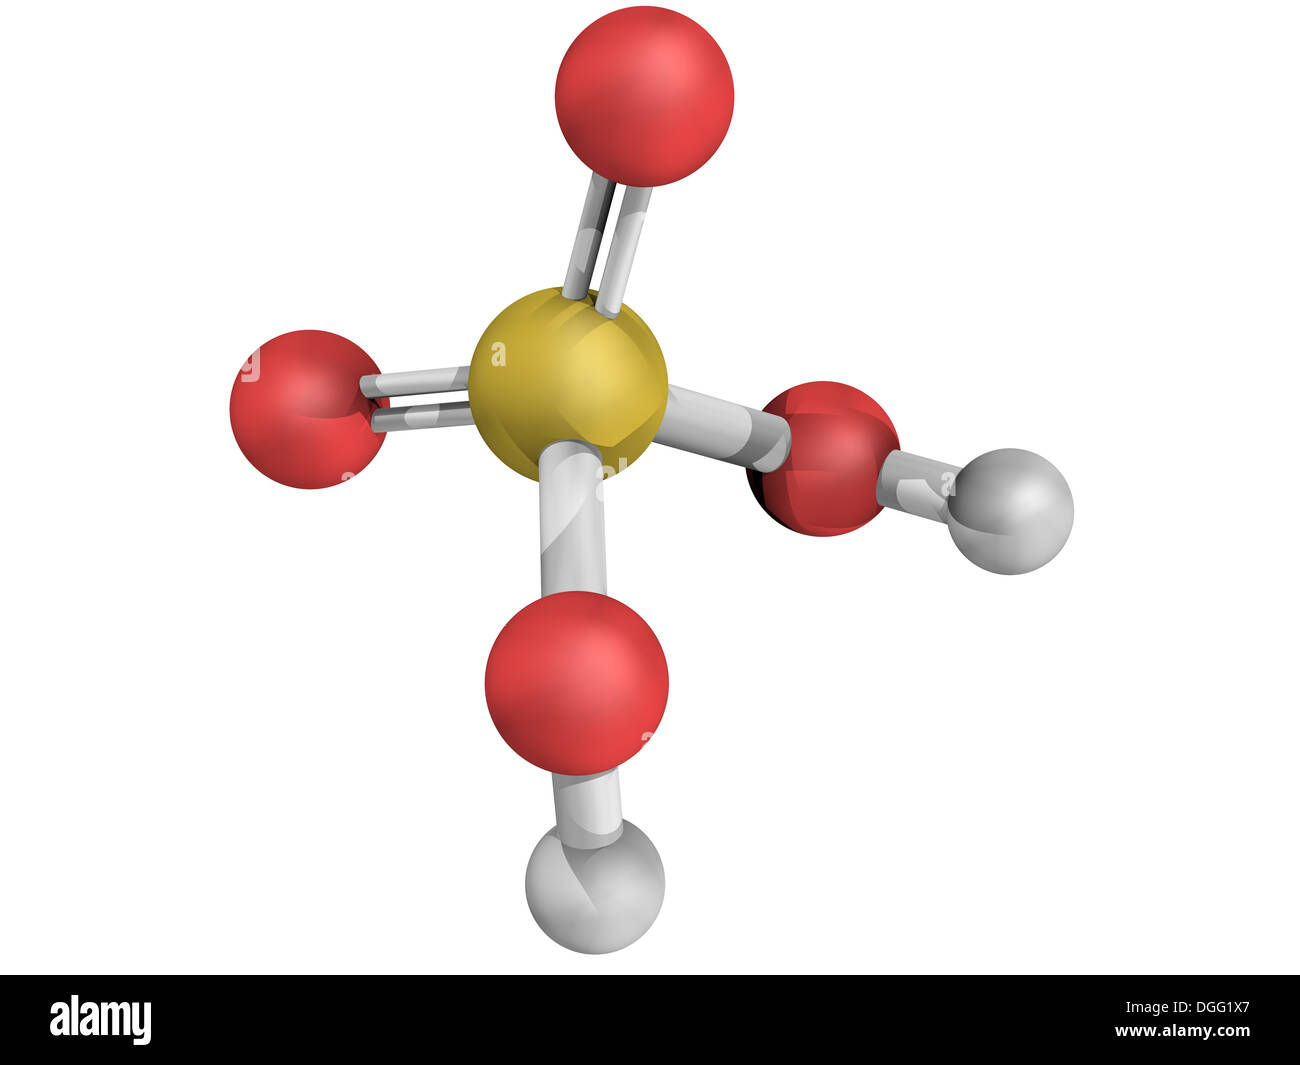 Struttura chimica di acido solforico (H2SO4, olio di vetriolo